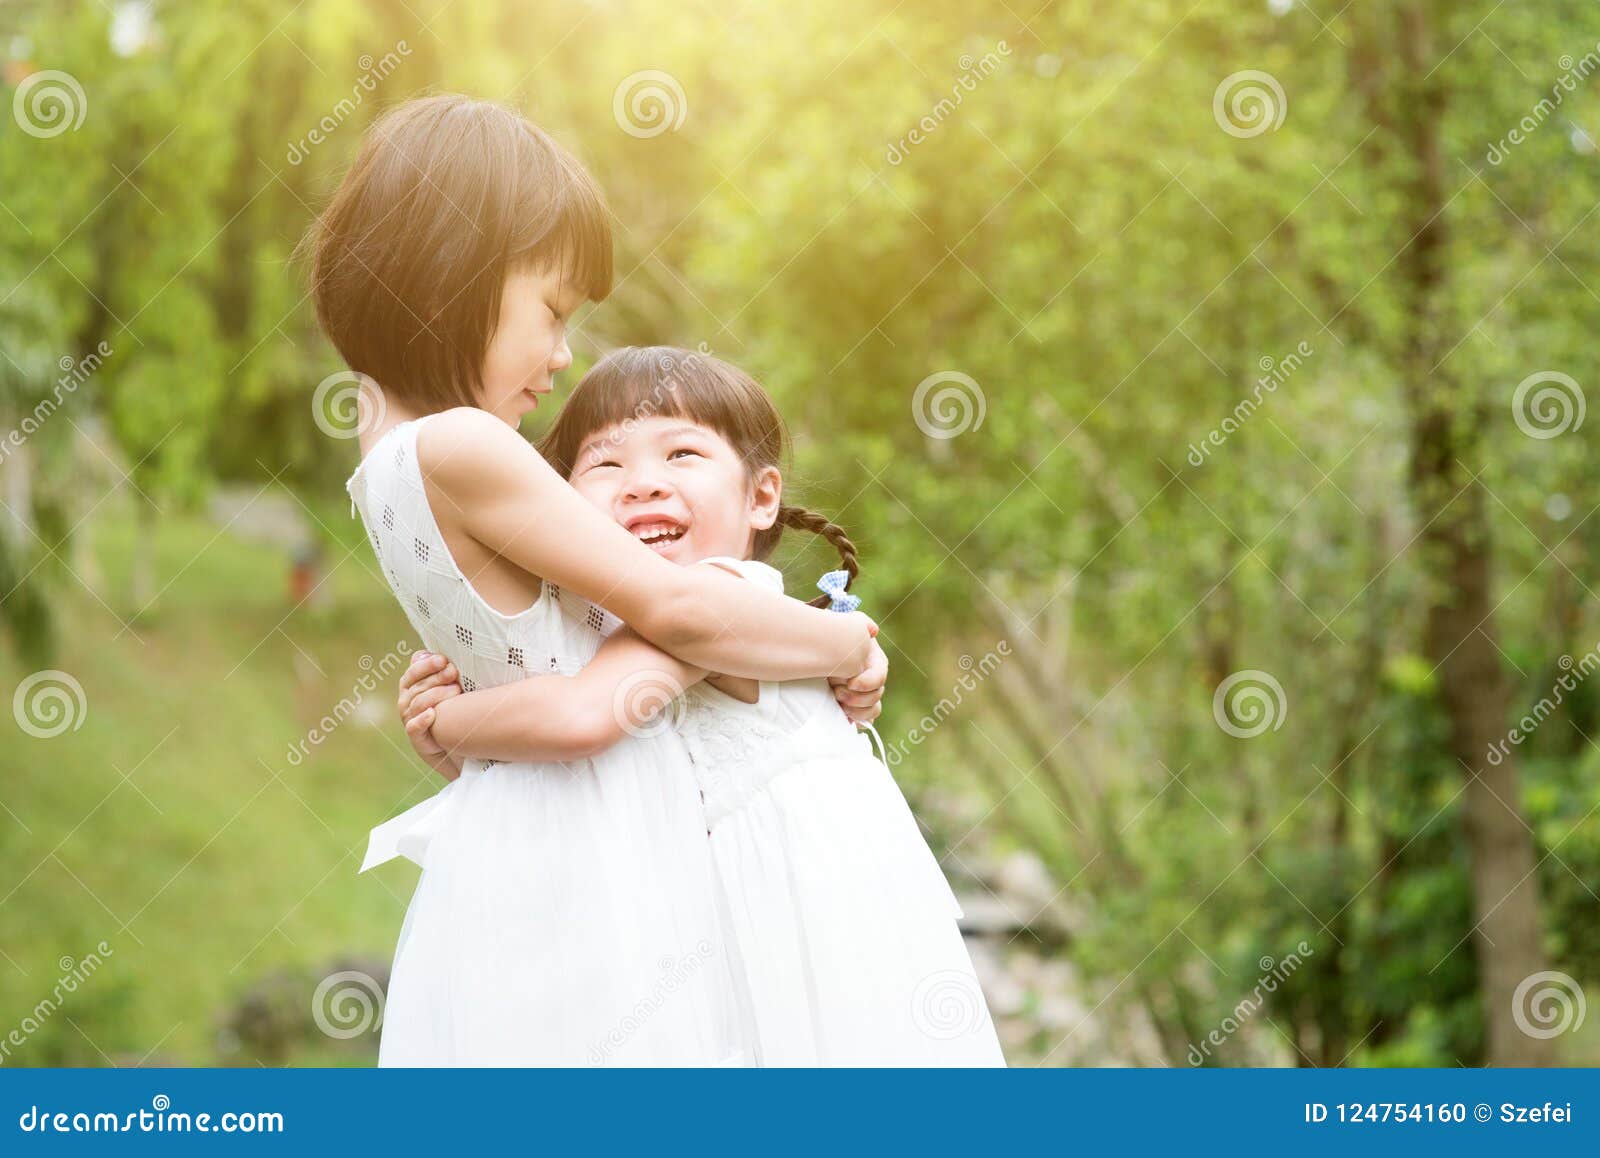 可爱姐妹拥抱 库存图片. 图片 包括有 纵向, 庭院, 乐趣, 拥抱, 节假日, 朋友, 有吸引力的, 设计 - 100390853